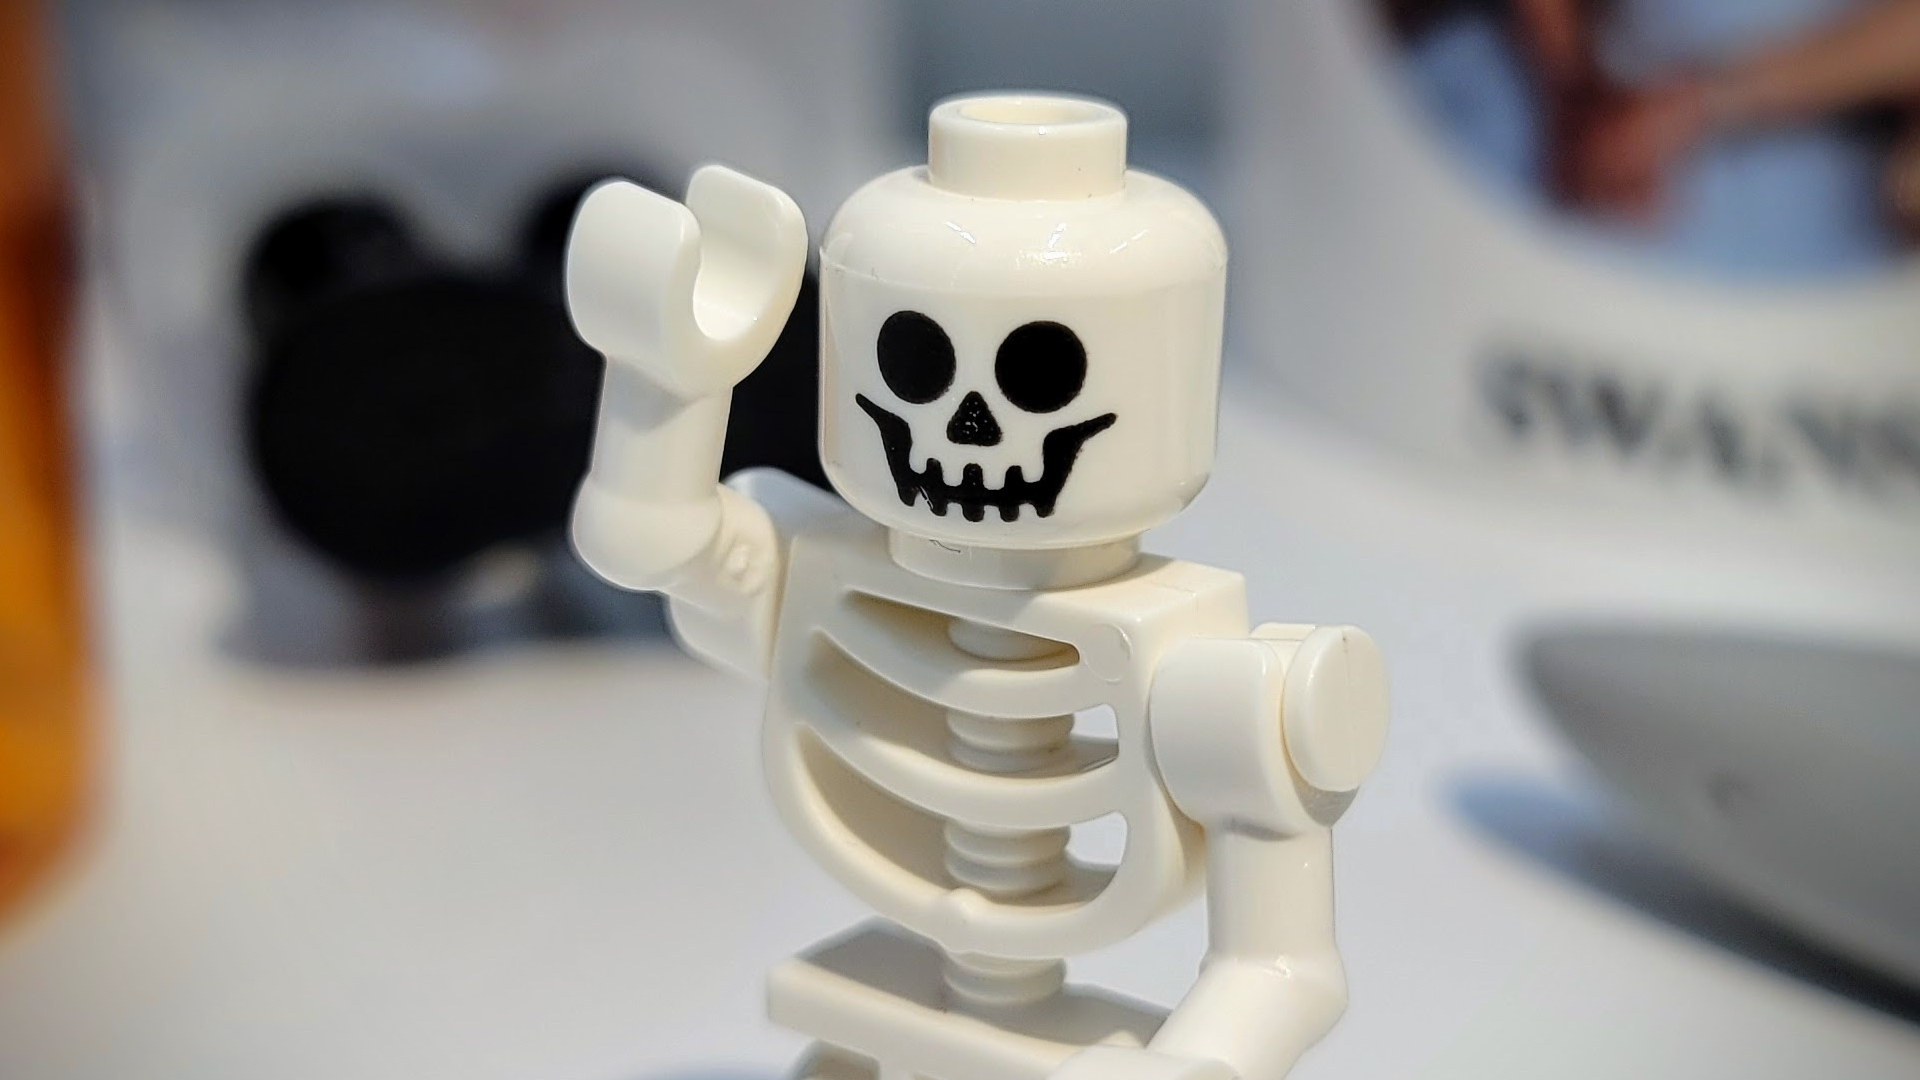 Real original Lego skull